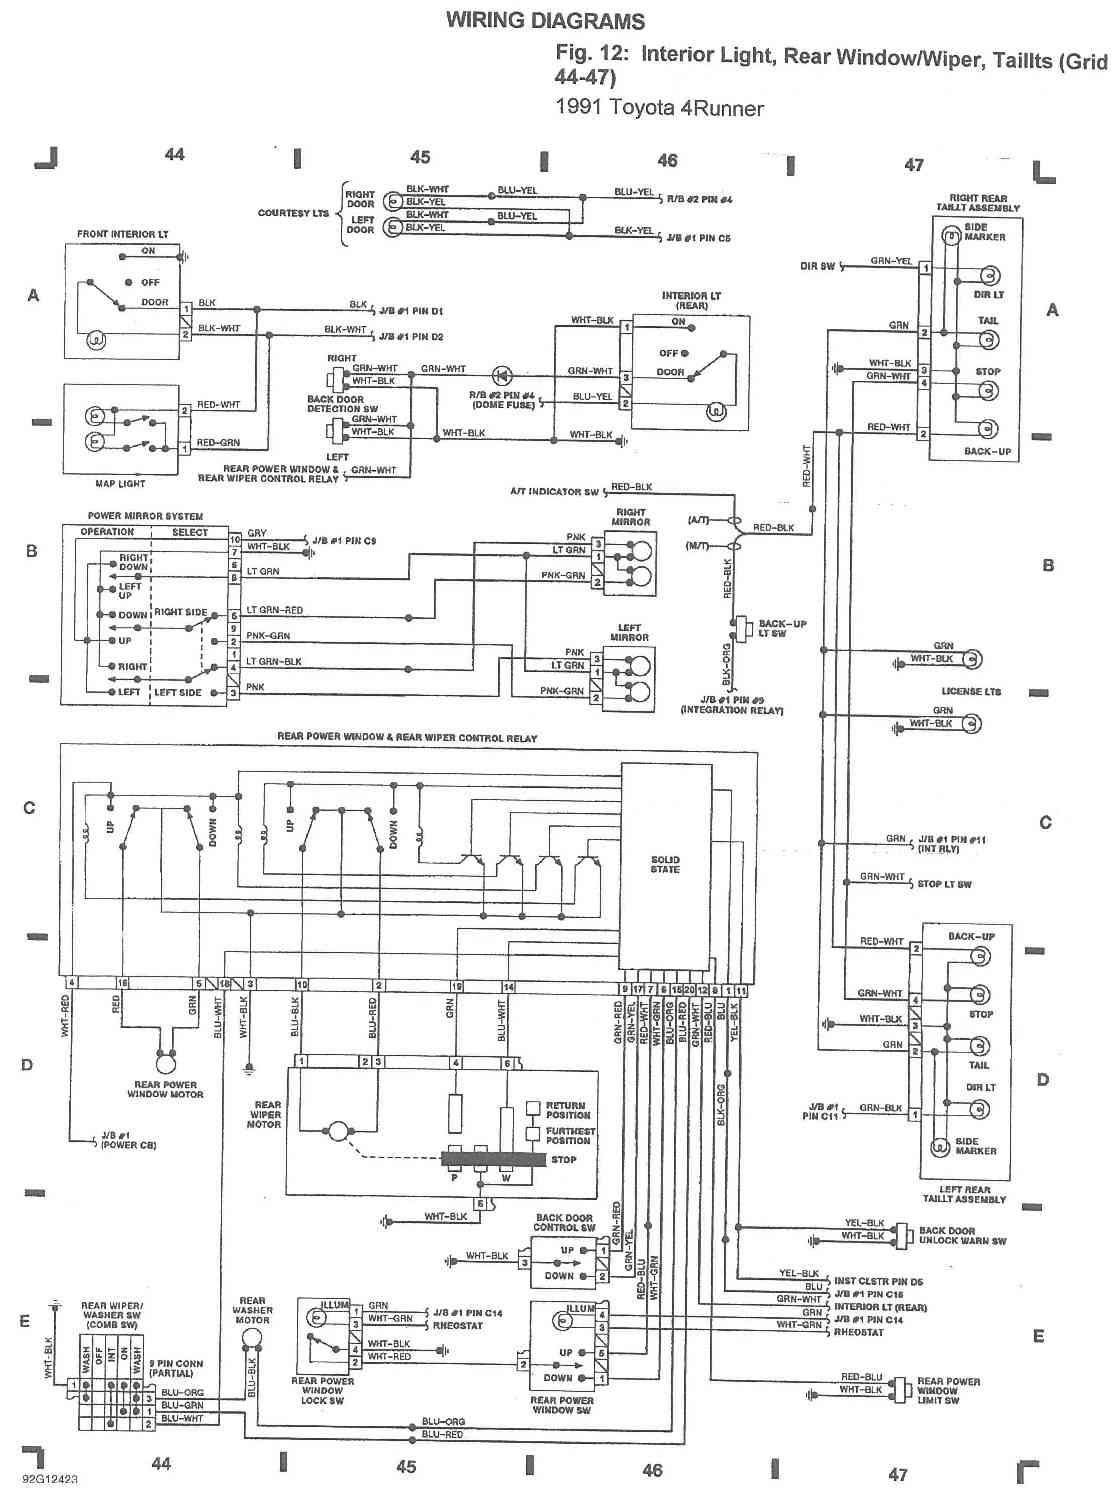 1985 Toyota 4runner engine wiring harness